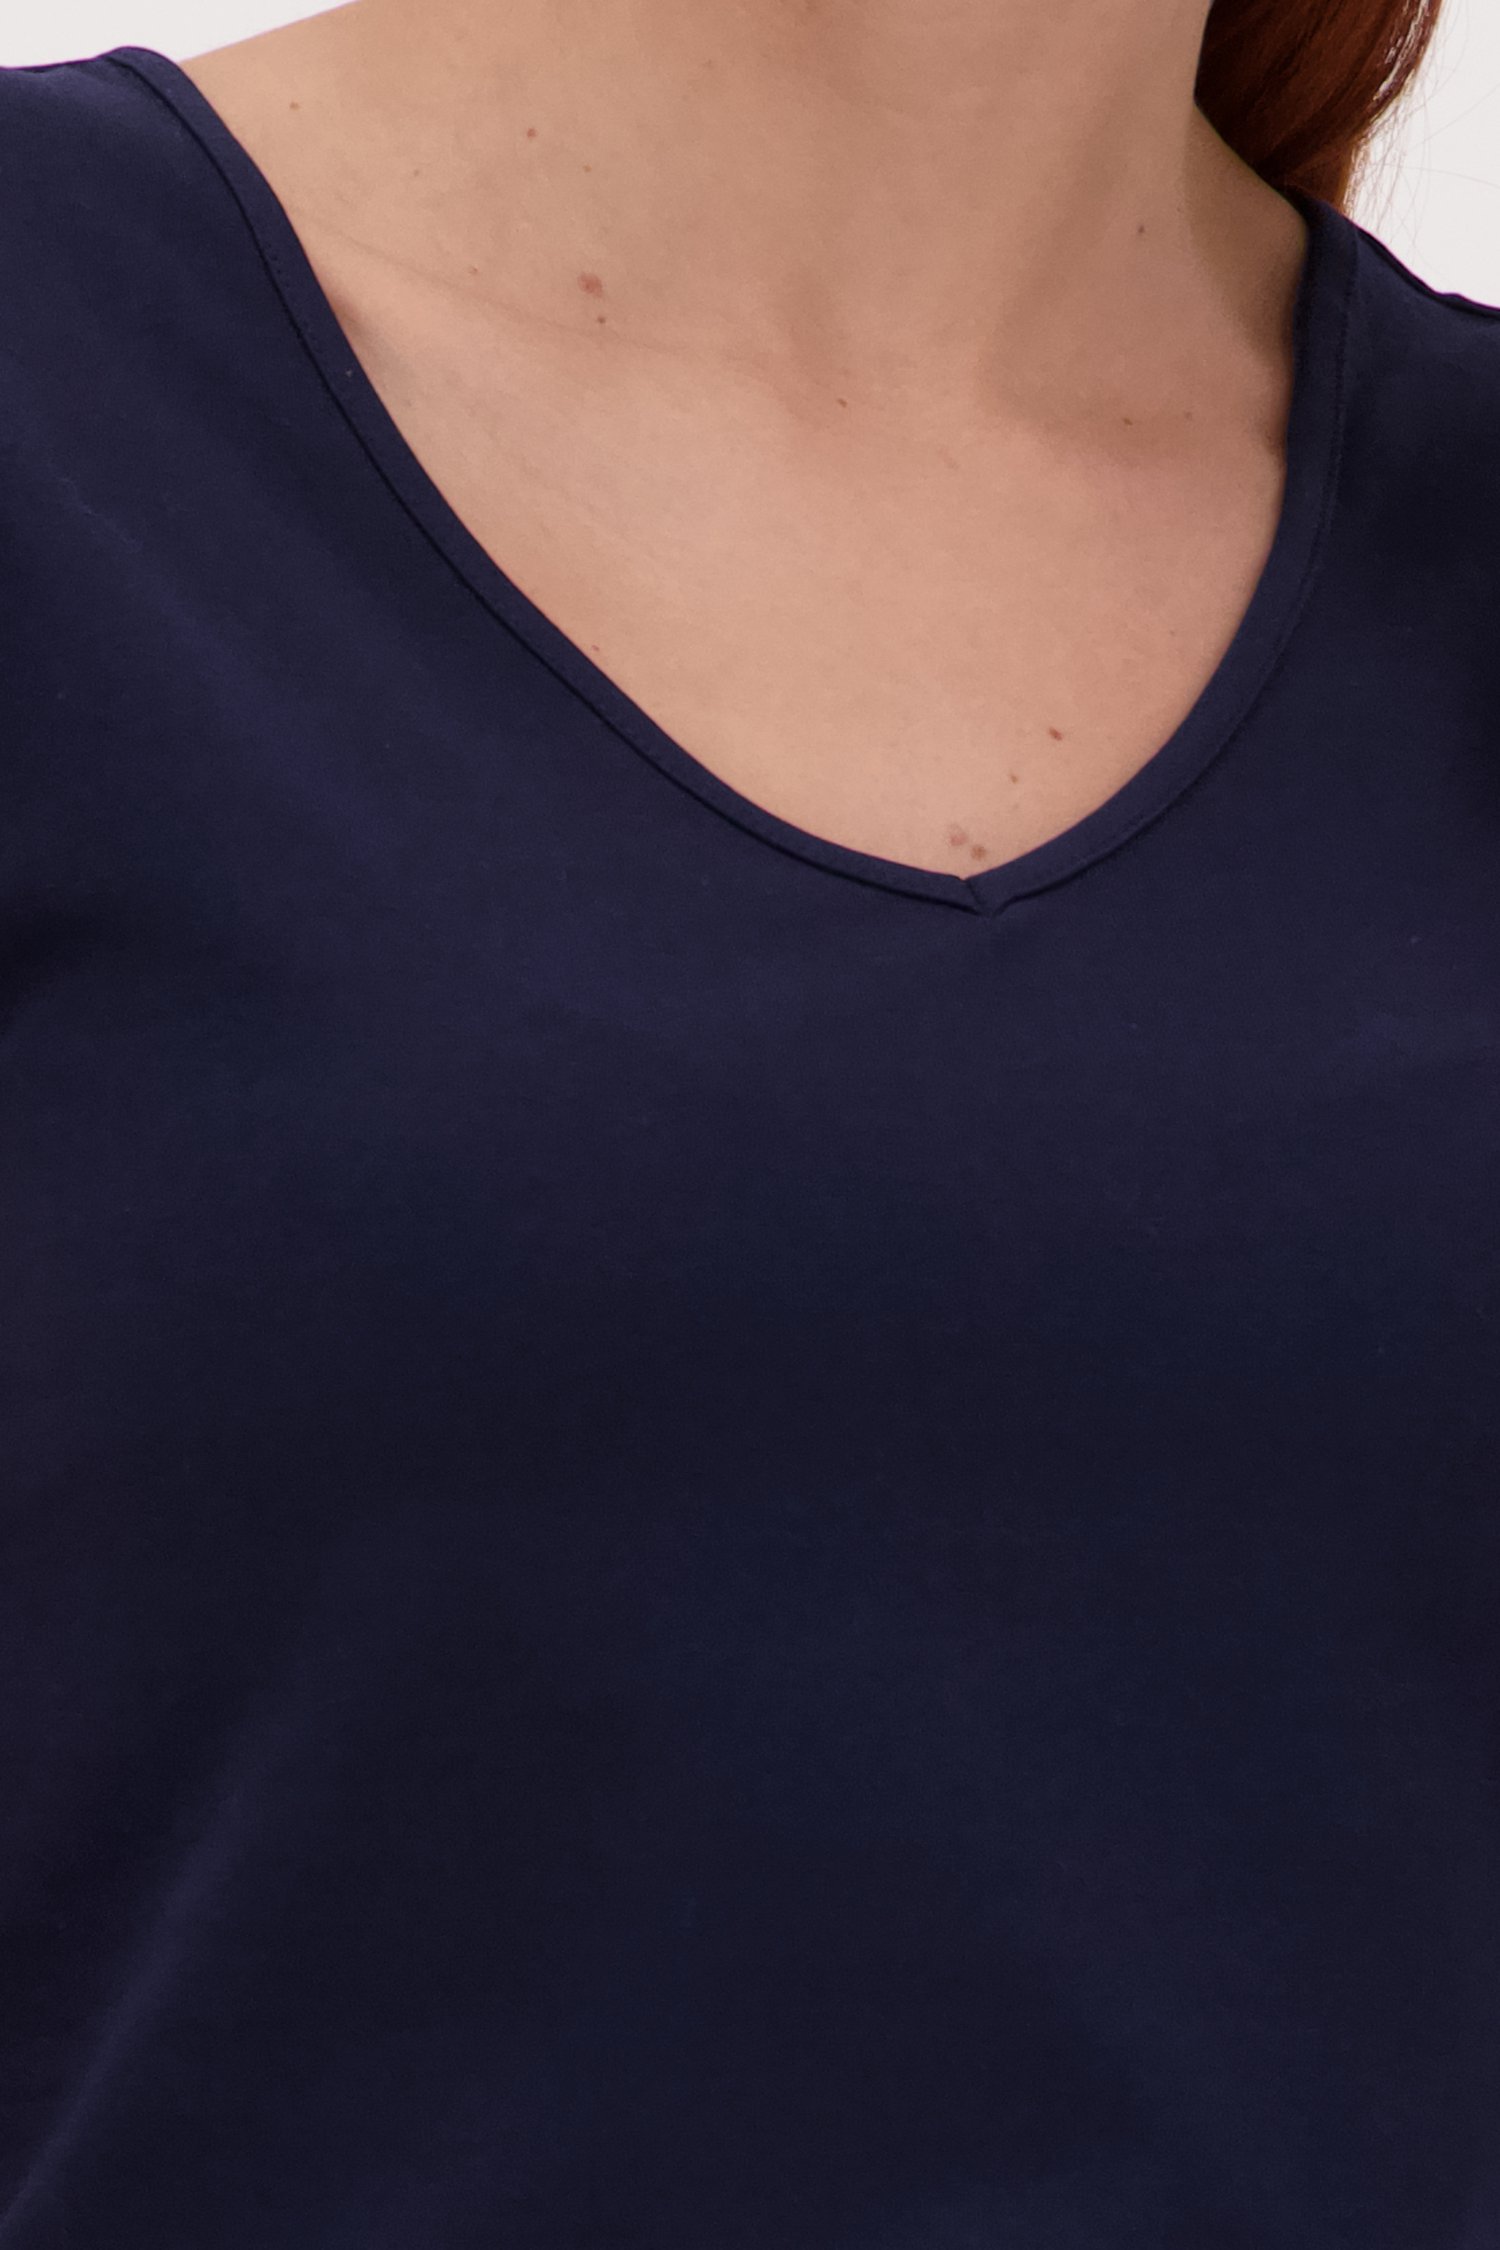 T-shirt simple marine avec col en V de Liberty Island pour Femmes